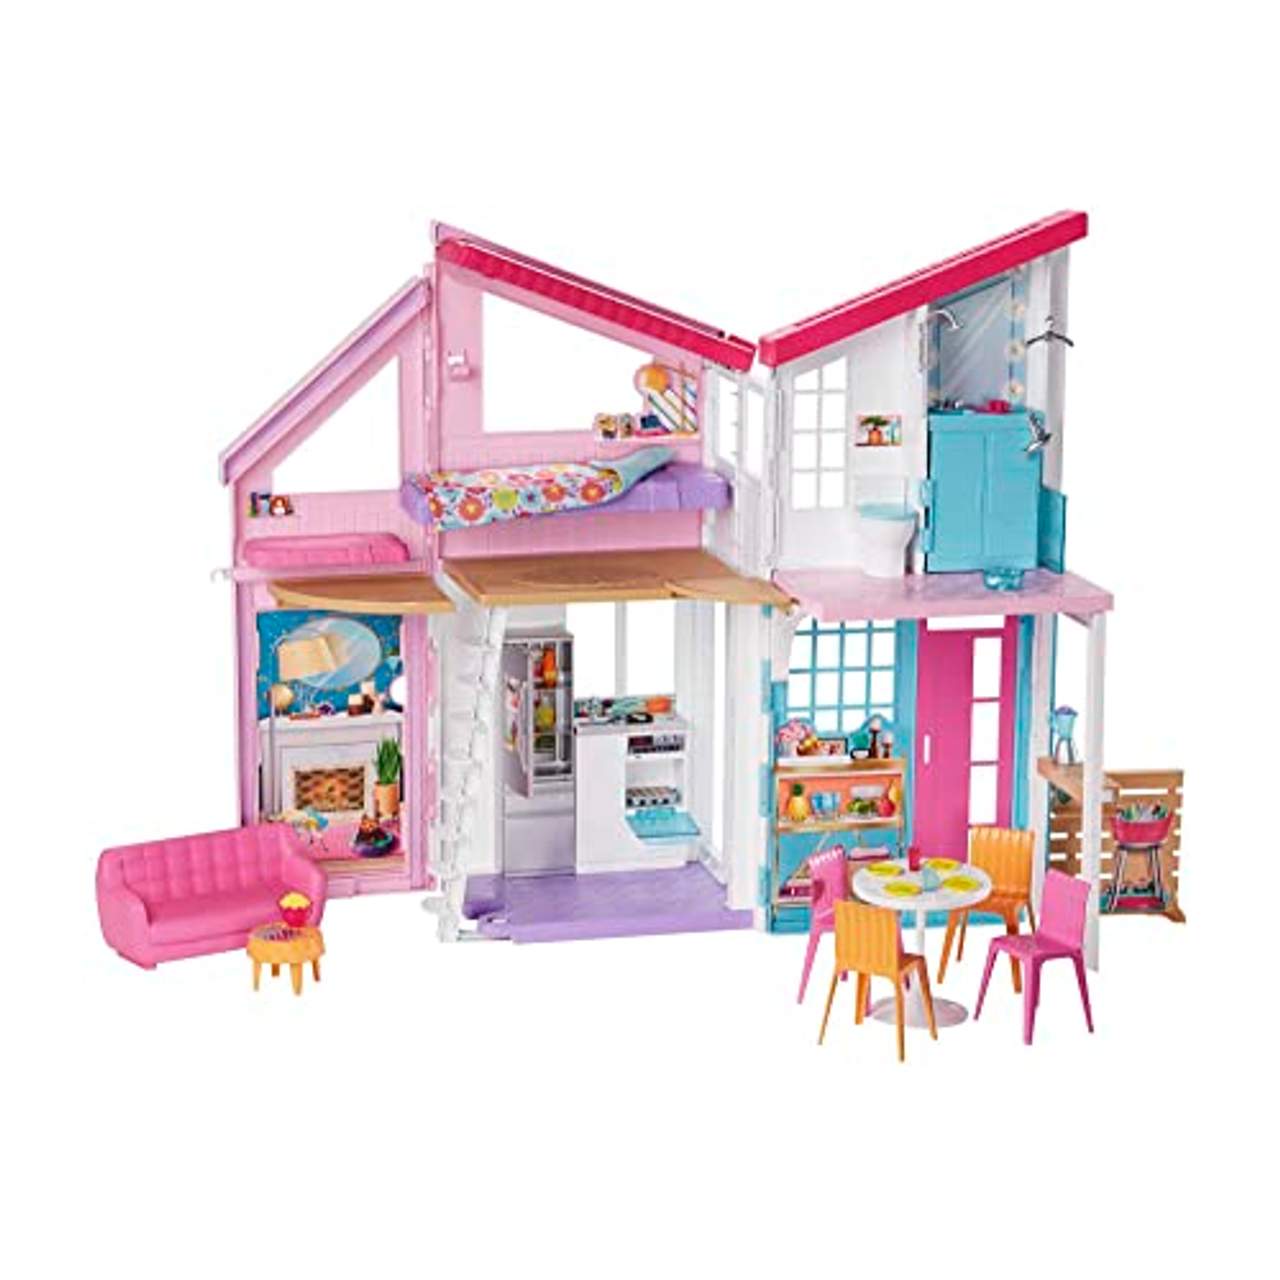 Barbie FXG57 Malibu Haus Puppenhaus 60 cm breit